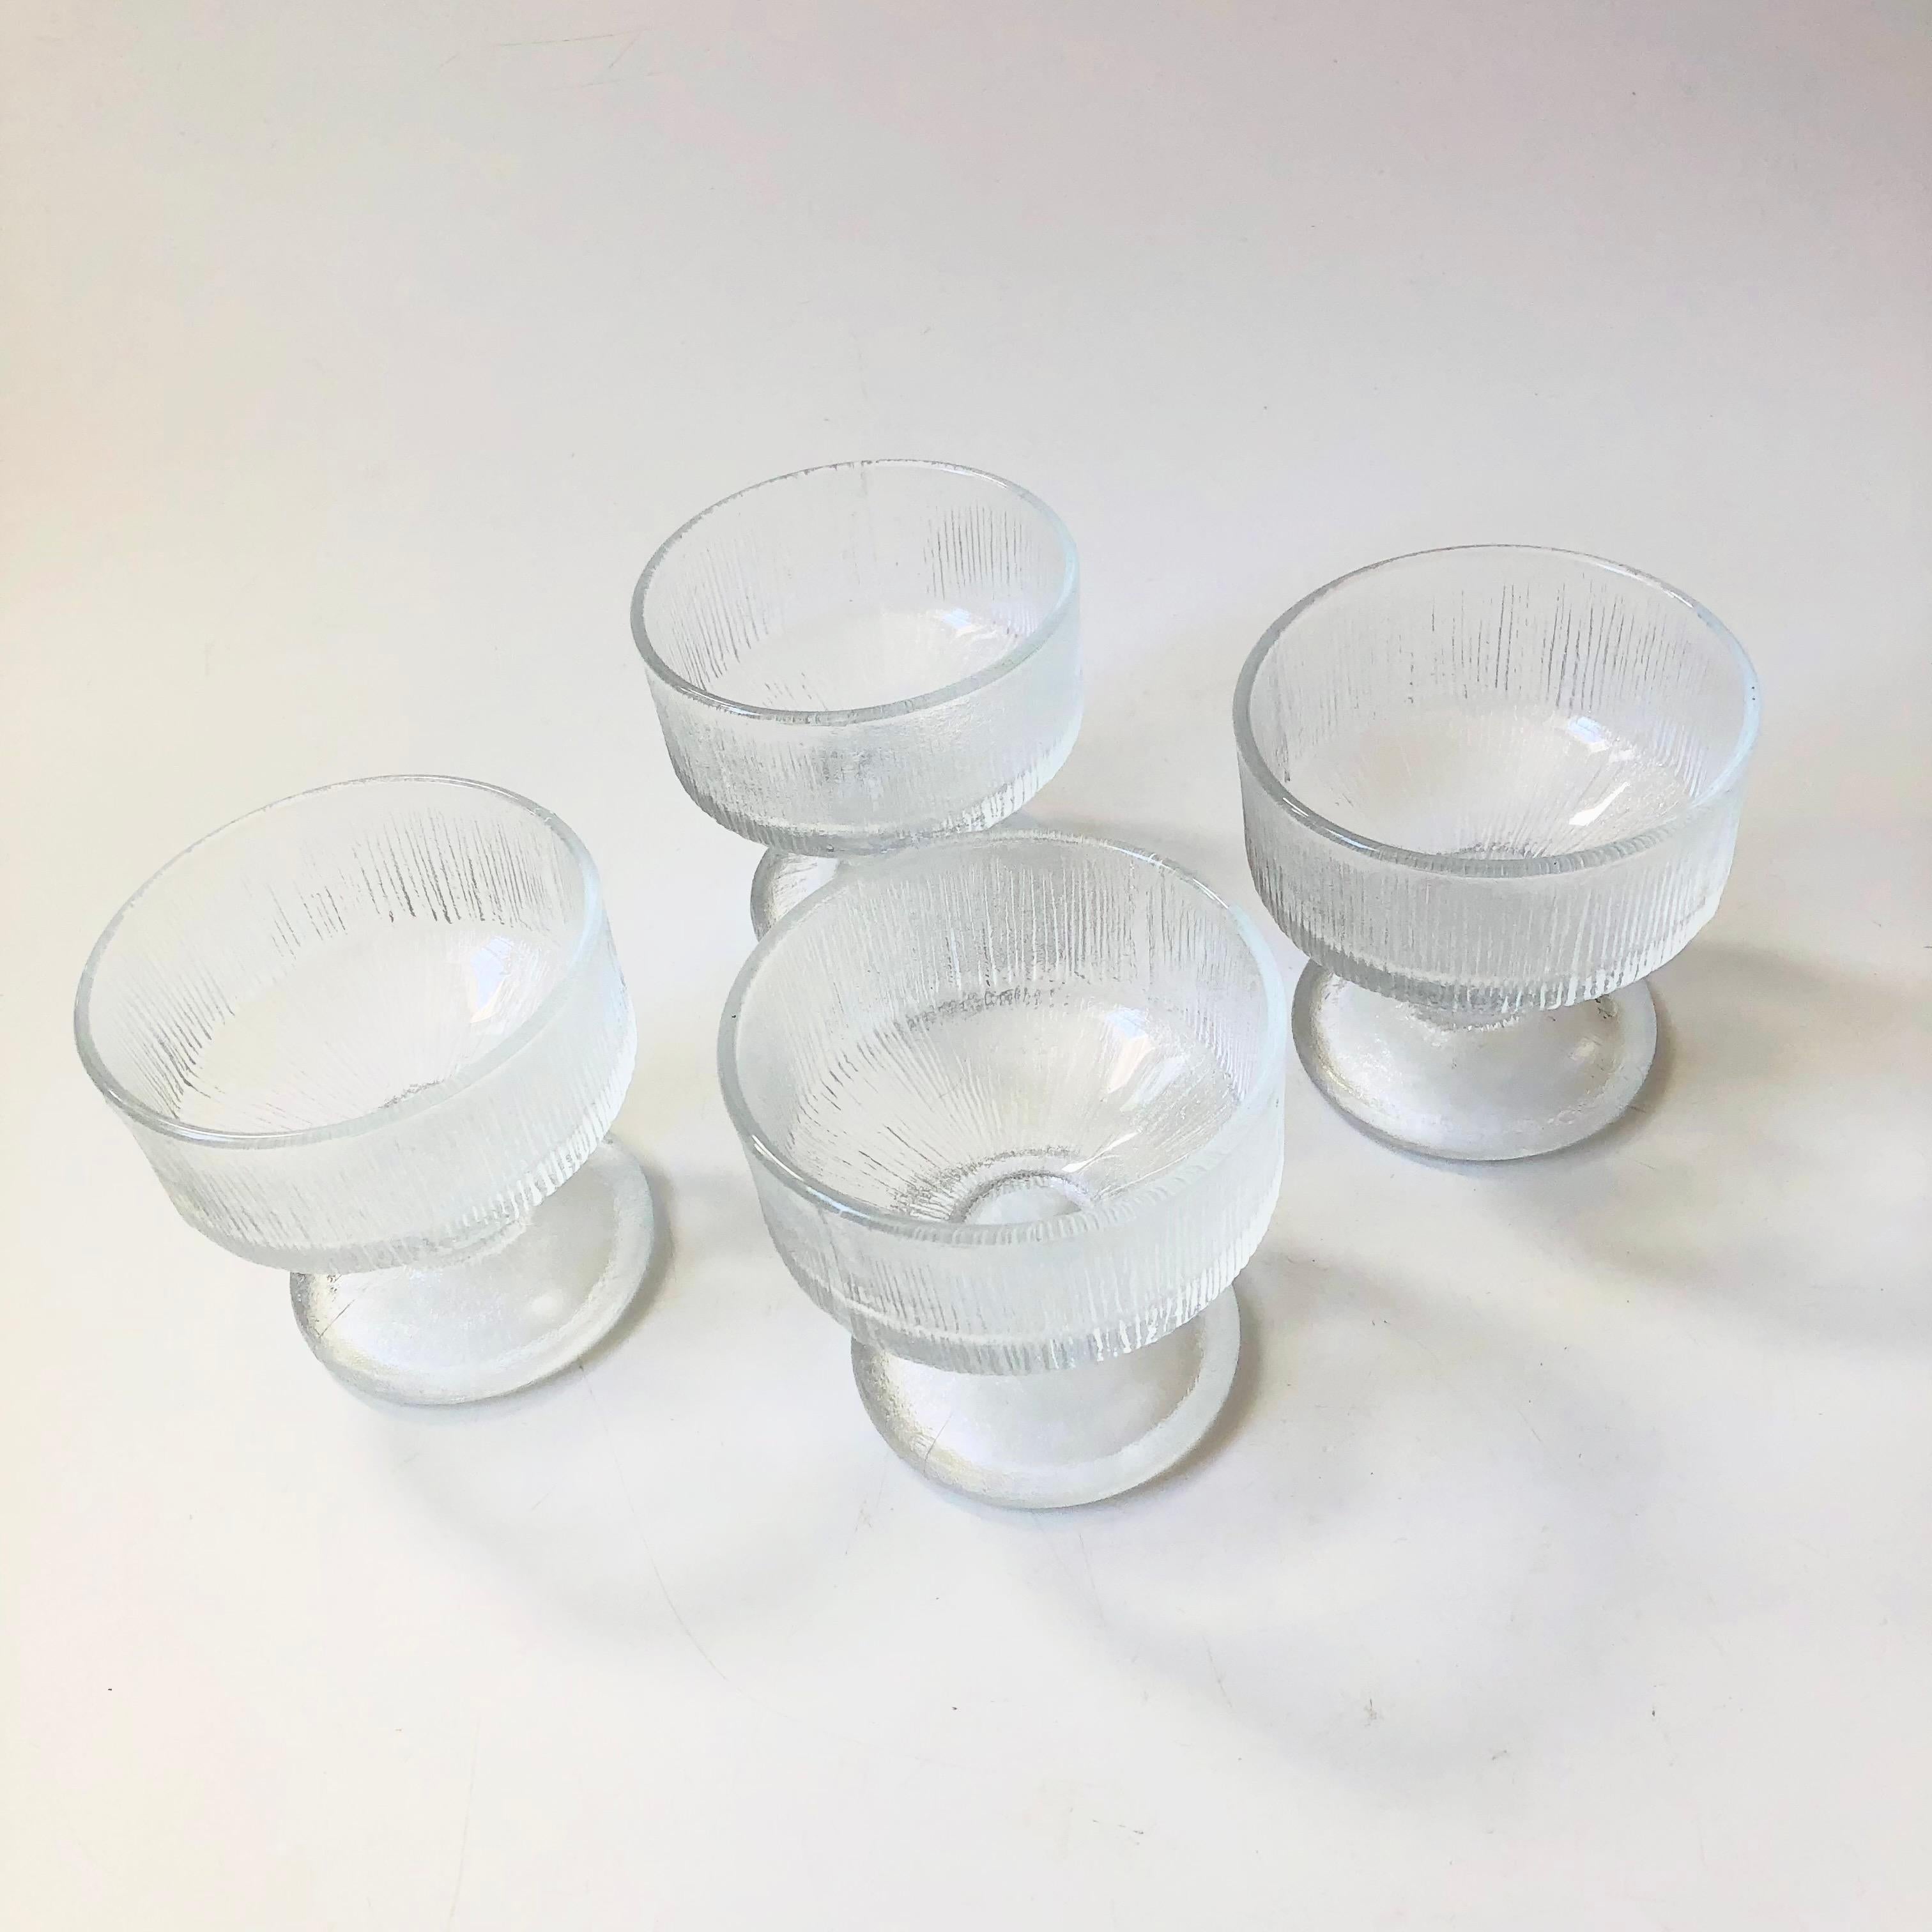 Un ensemble de 4 coupes en verre du milieu du siècle. Chaque verre a une forme élégante et une belle texture glacée. Parfait pour le champagne ou les cocktails.

